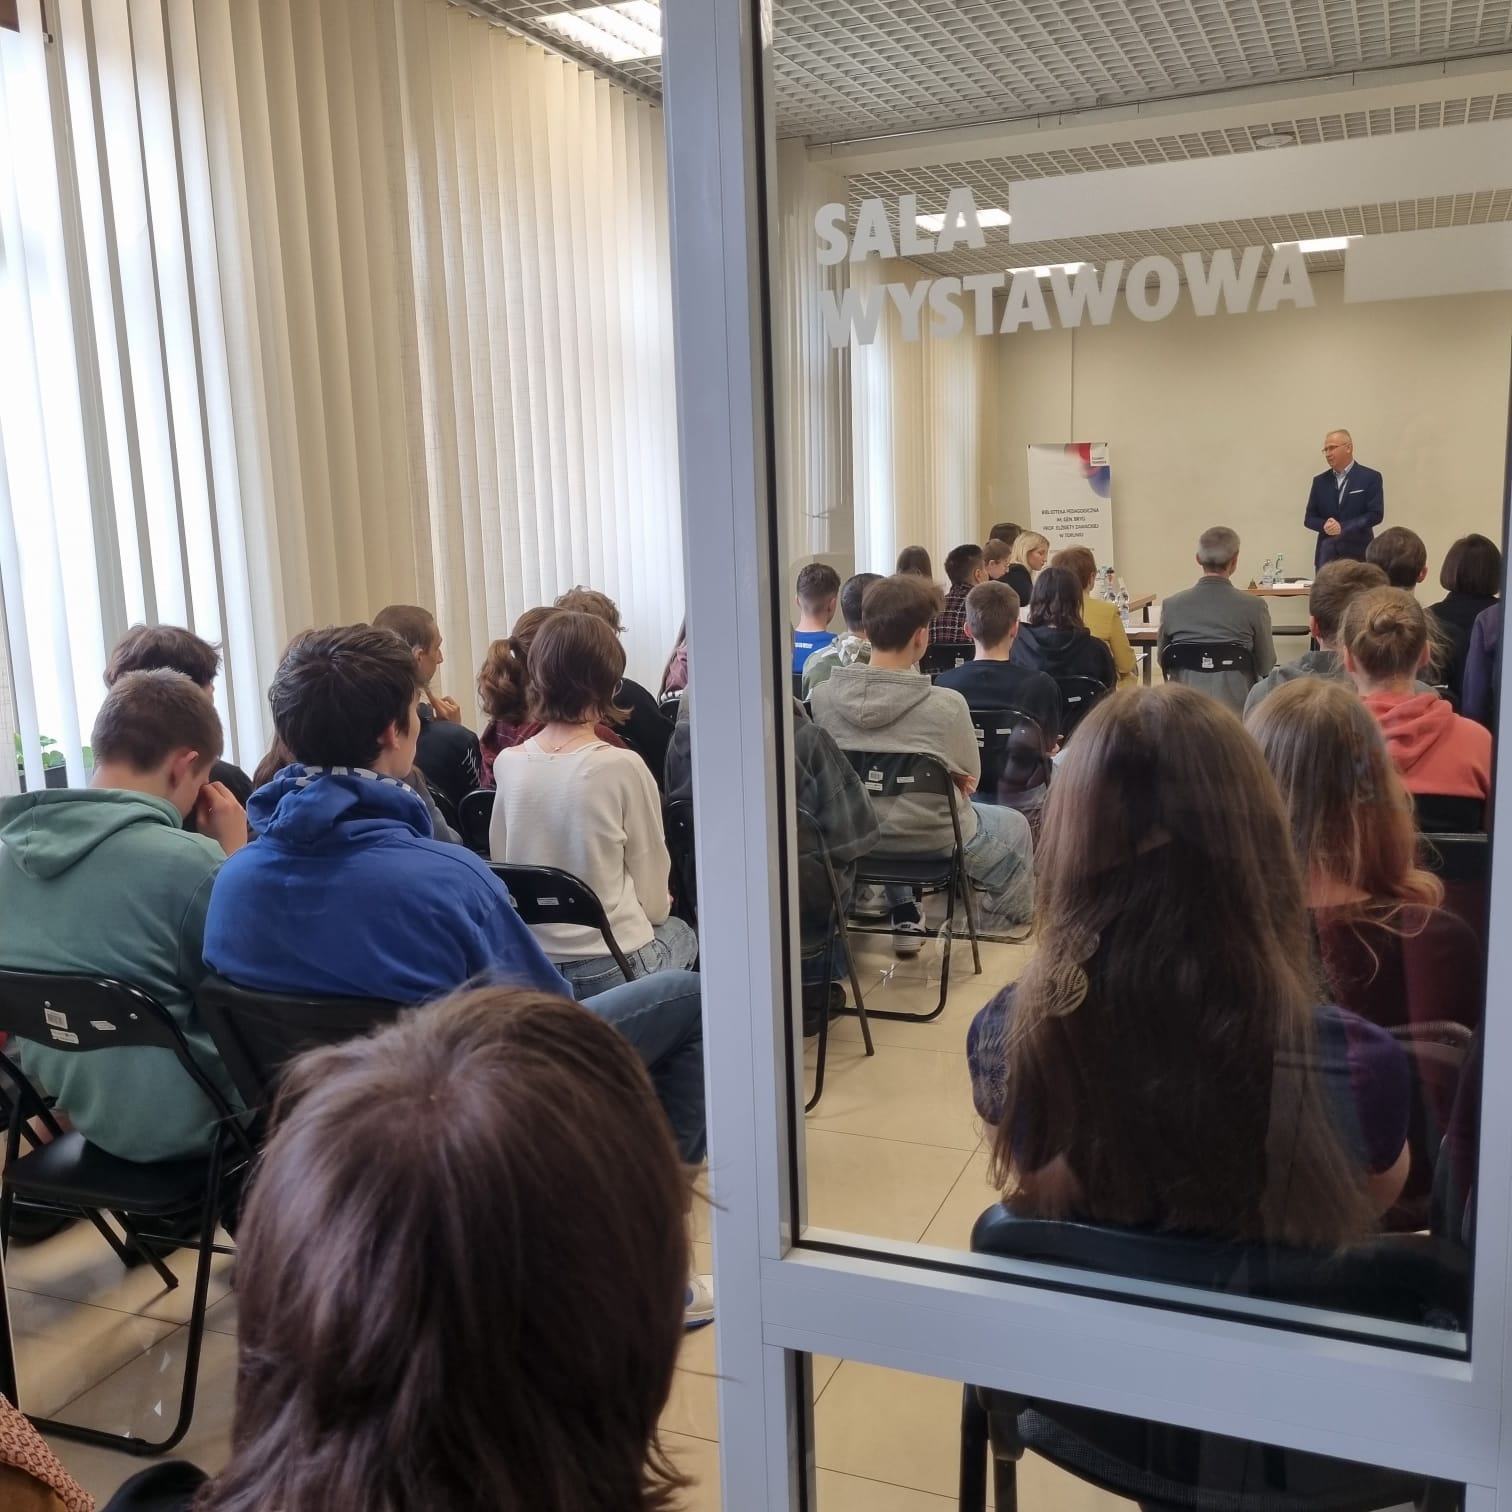 Zdjęcia przedstawiają salę wystawową Biblioteki Pedagogicznej w Toruniu. W sali znajdują się: publiczność, jurorzy, uczestnicy debaty, prowadzący debatę.